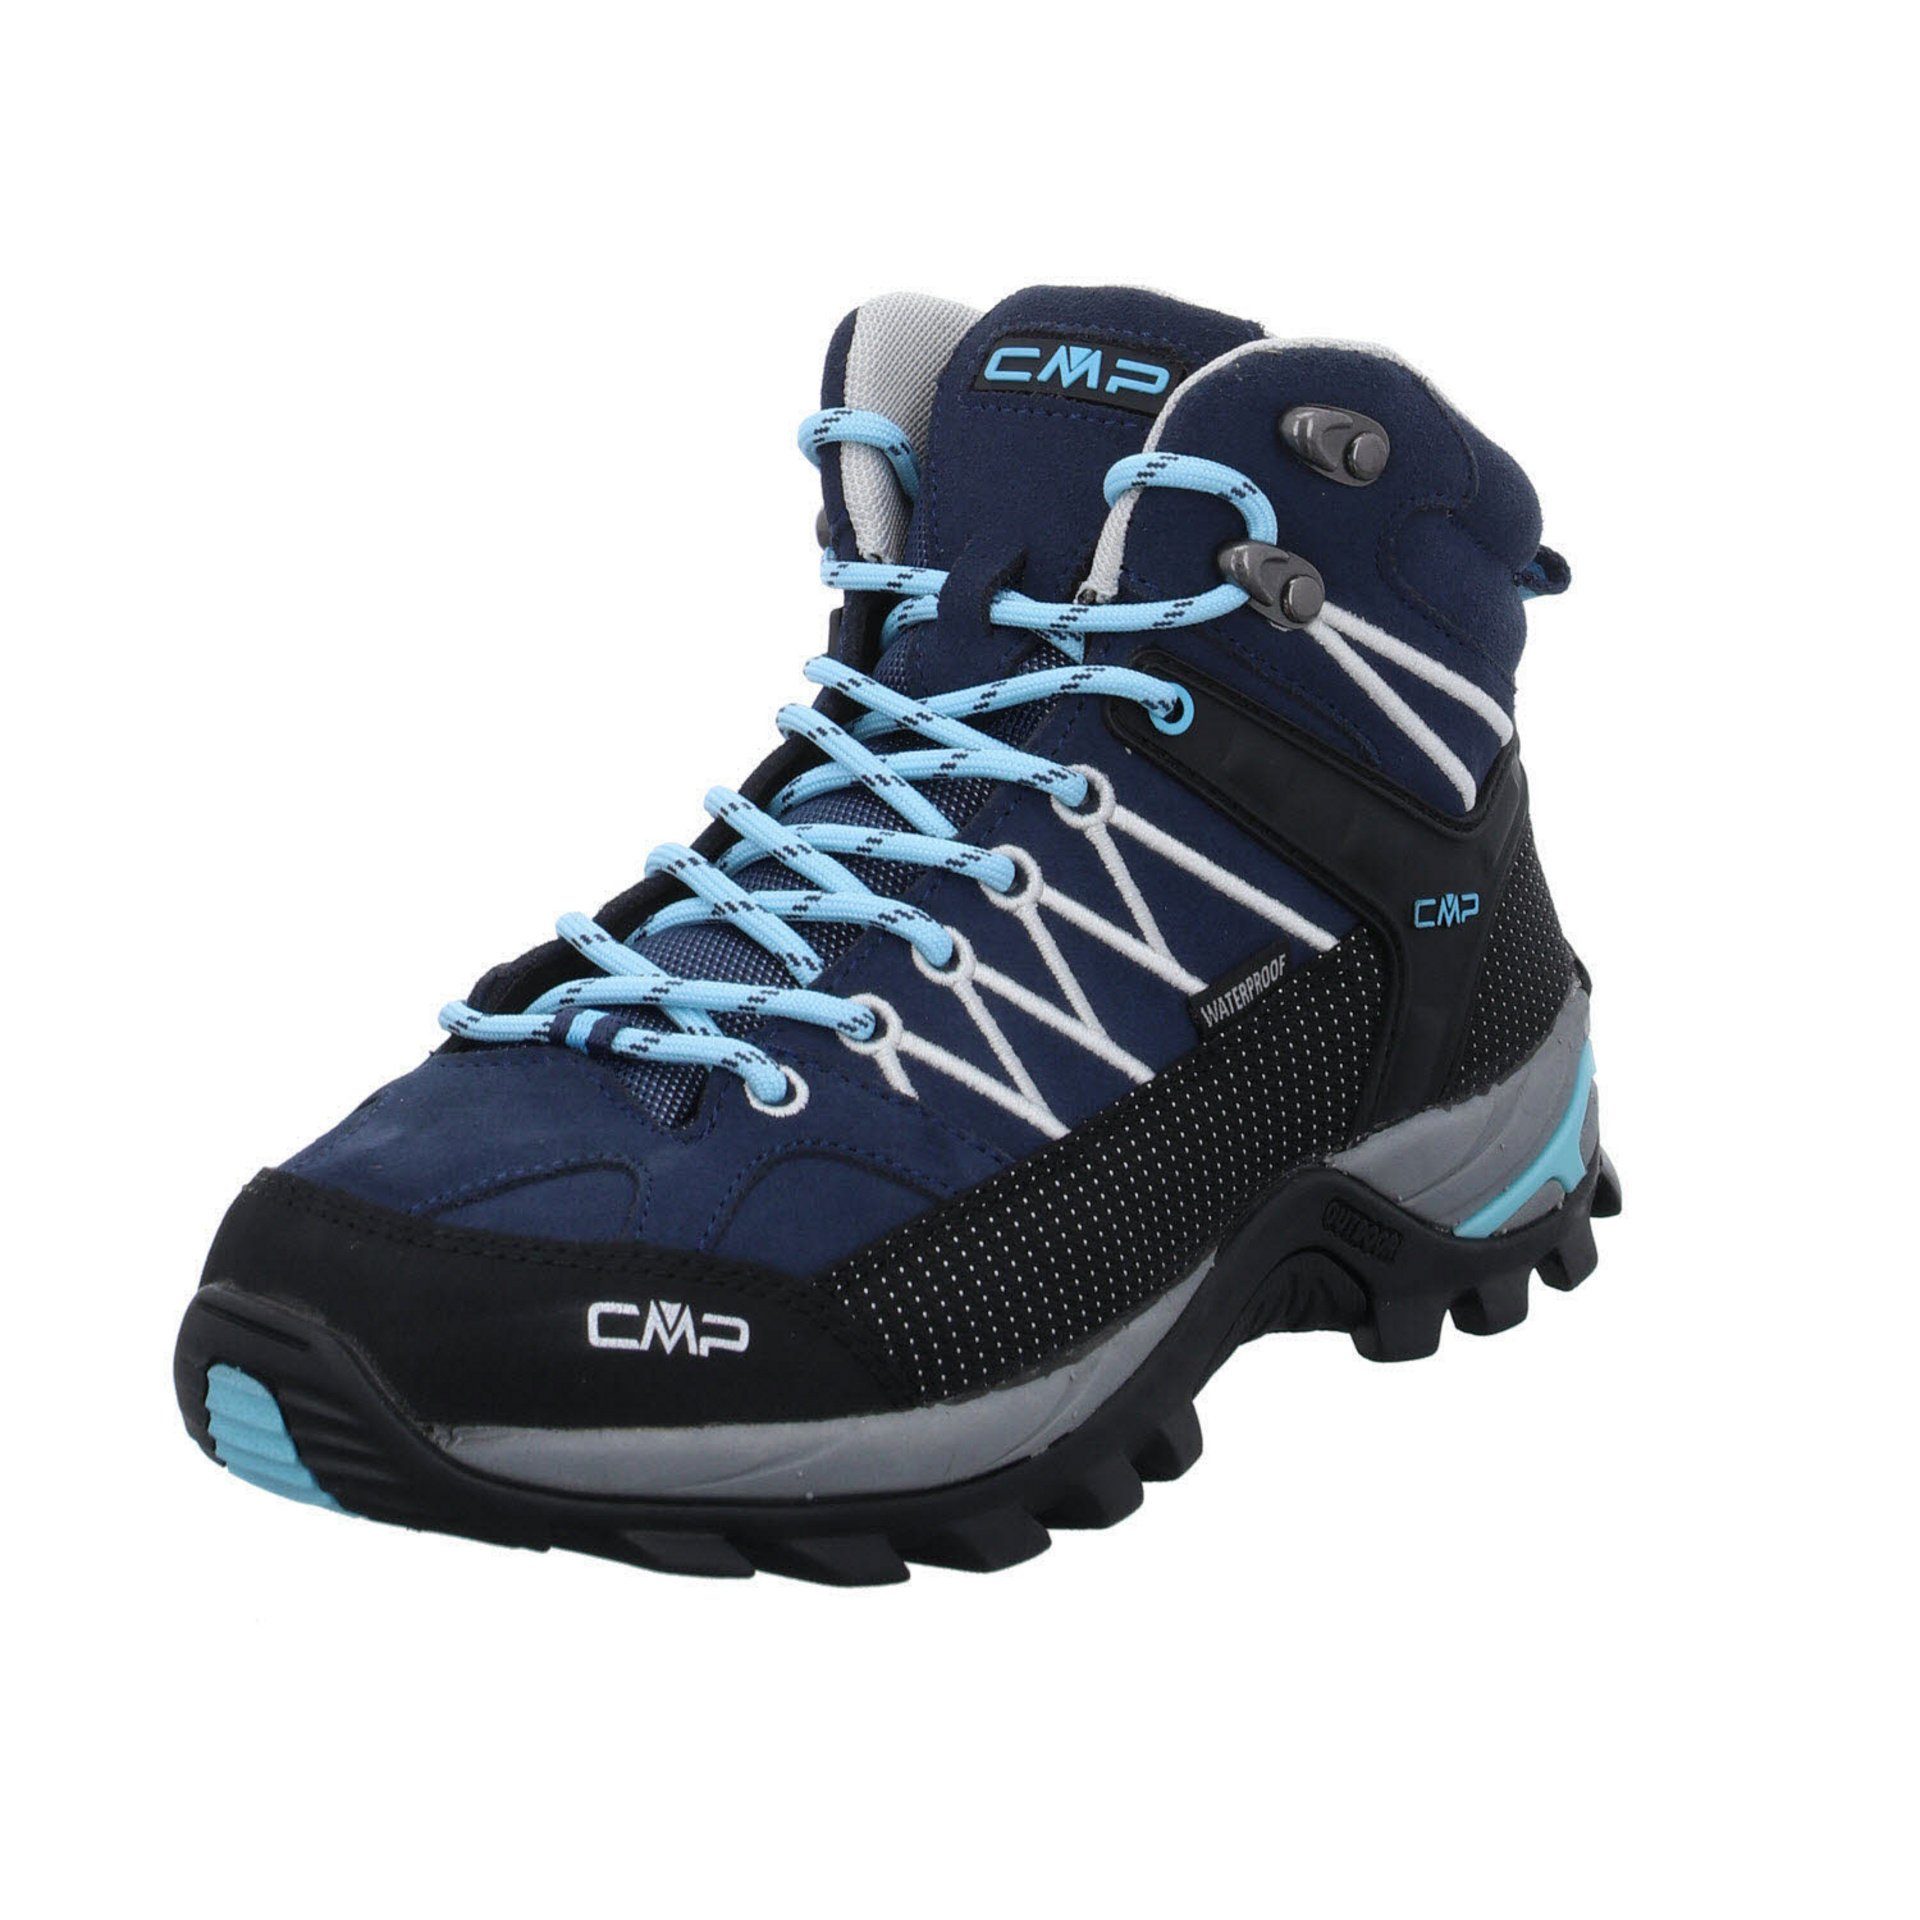 Rigel Outdoorschuh Leder-/Textilkombination Damen Outdoorschuh blau Schuhe CMP Mid CAMPAGNOLO Outdoor